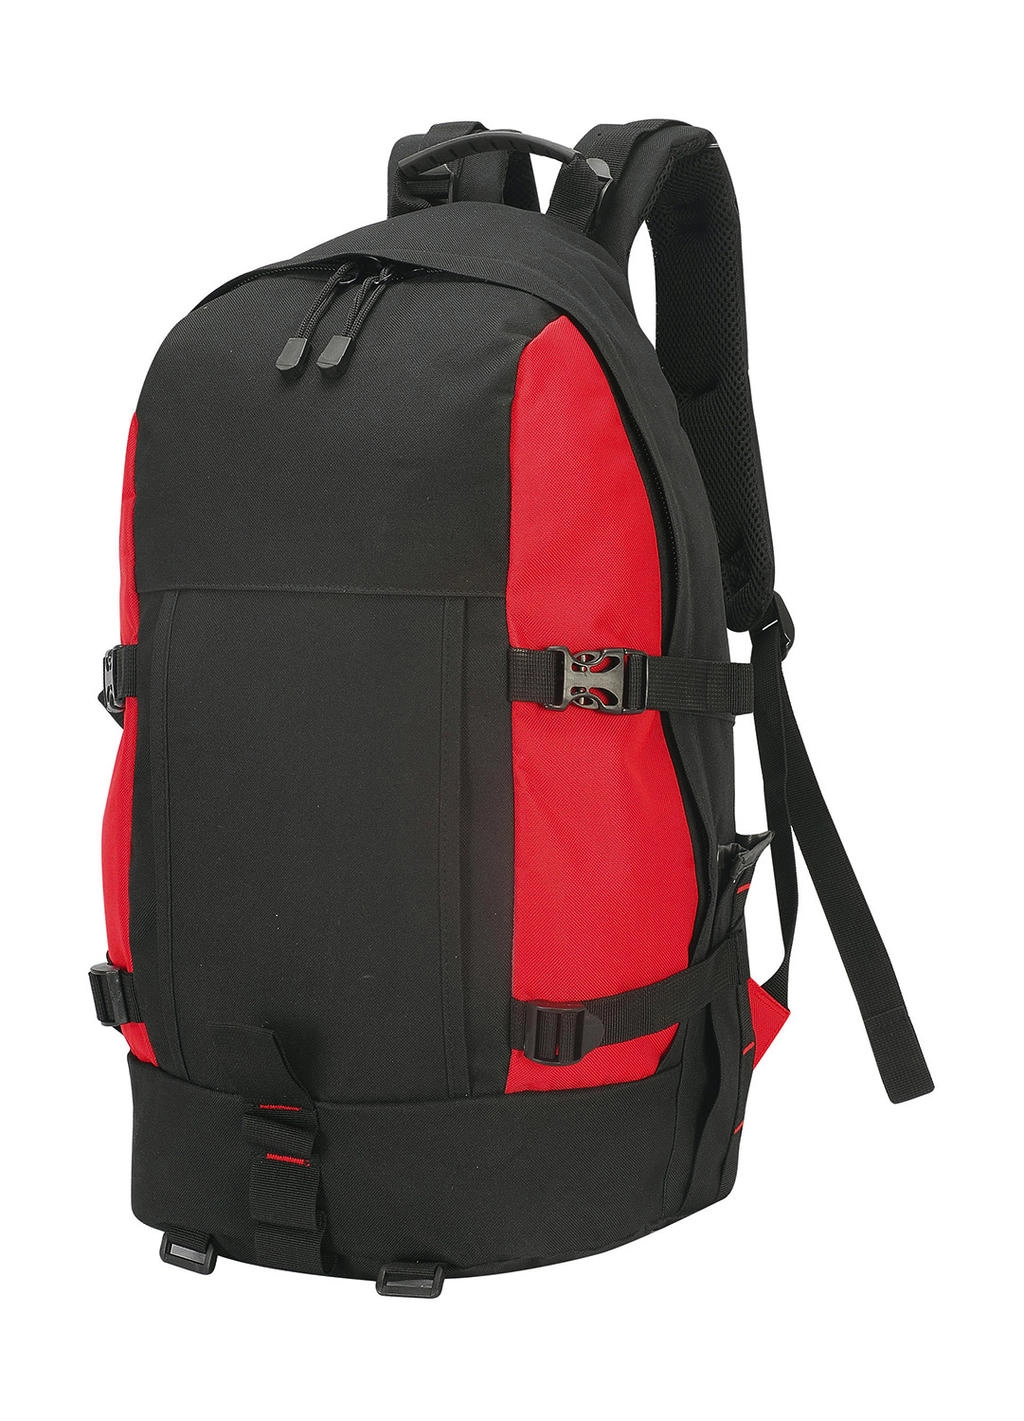 Gran Paradiso Hiker Backpack zum Besticken und Bedrucken in der Farbe Black/Red mit Ihren Logo, Schriftzug oder Motiv.